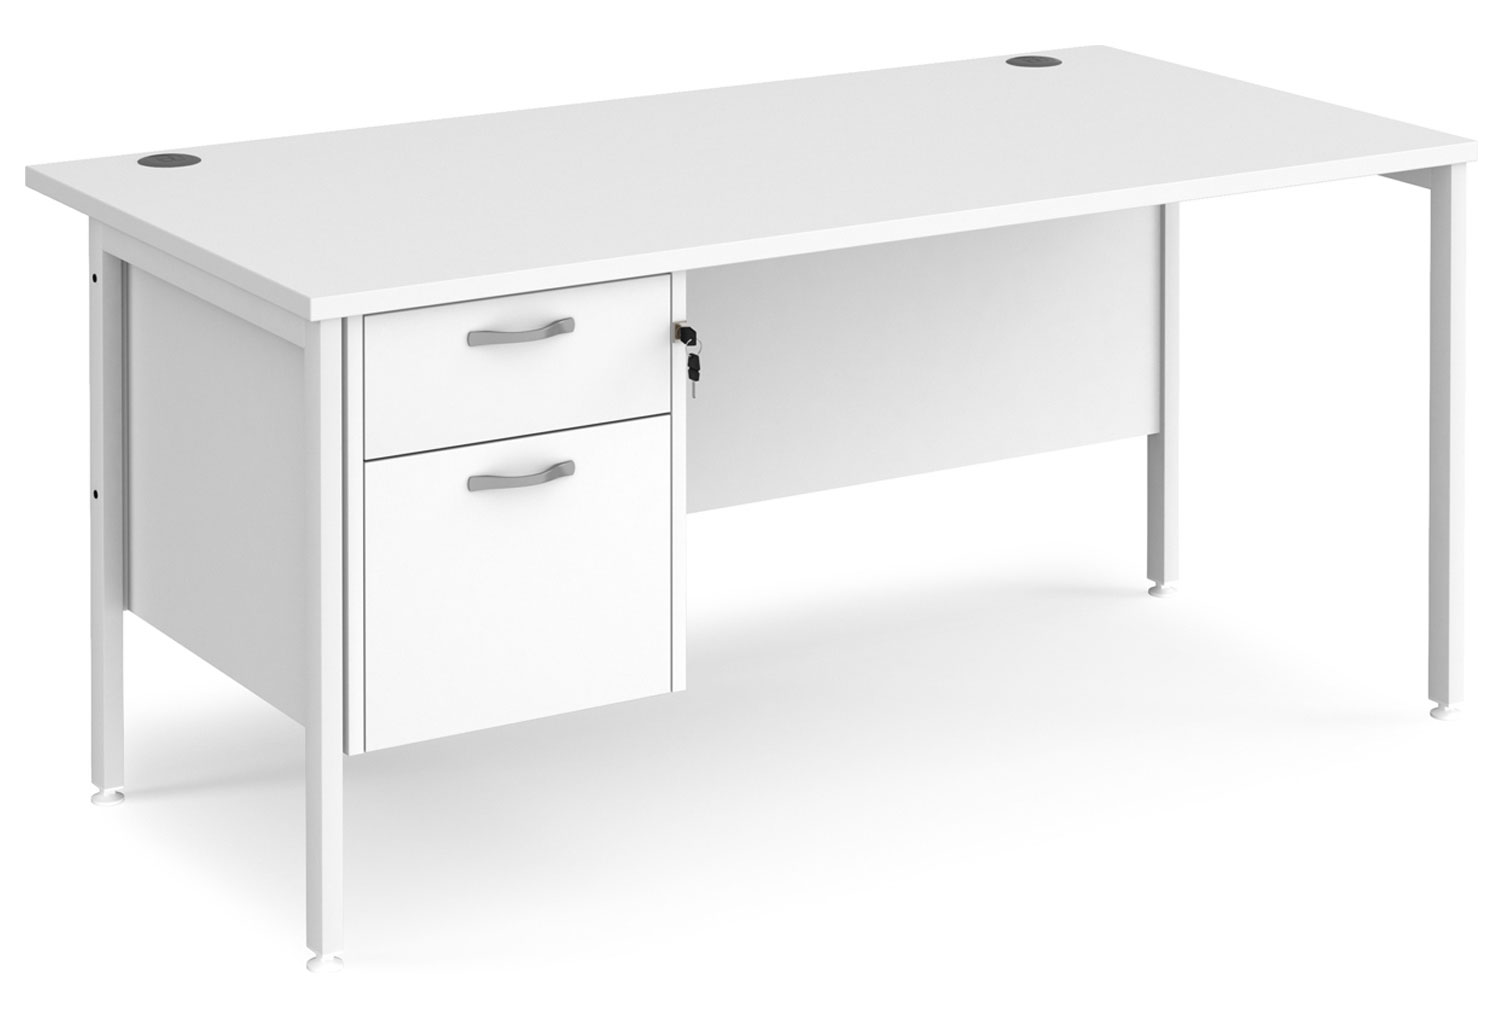 Value Line Deluxe H-Leg Rectangular Office Desk 2 Drawers (White Legs), 160wx80dx73h (cm), White, Fully Installed